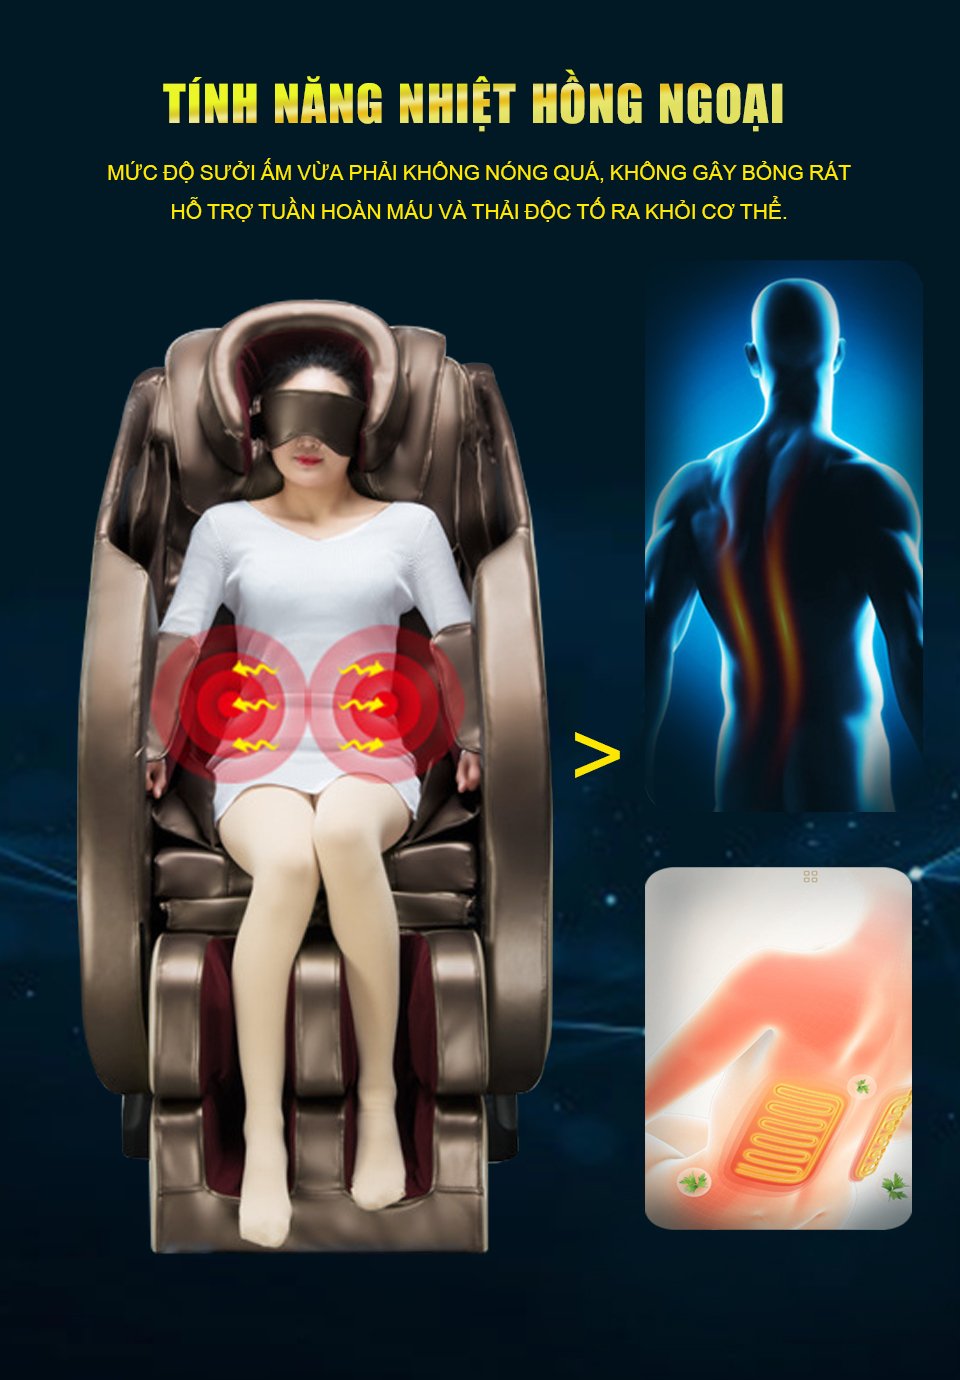 Chế độ nhiệt hồng ngoại của ghế massage giúp sưởi ấm và tăng cường khả năng lưu thông máu của người dùng